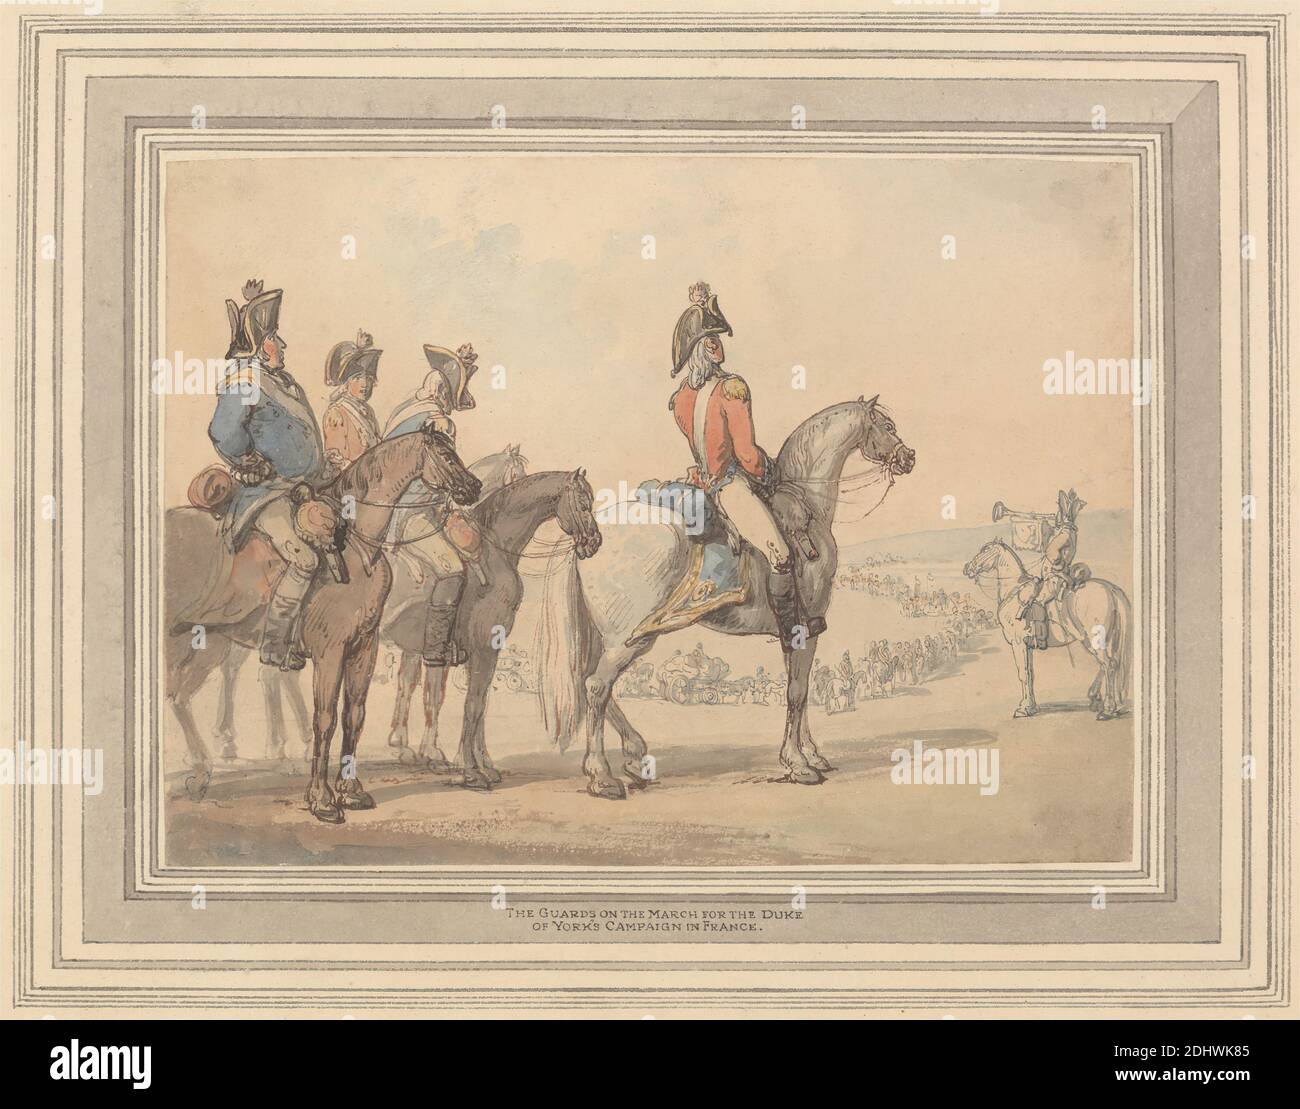 Los guardias en la marcha por la Campaña del Duque de York en Francia, Thomas Rowlandson, 1756–1827, británico, sin fecha, acuarela, pluma y tinta marrón, pluma y tinta roja, pluma y tinta gris, y grafito en papel de move beige moderadamente grueso, de textura moderada, hoja: 6 3/4 × 9 1/4 pulgadas (17.1 × 23.5 cm) y montaje: 11 1/8 × 13 3/8 pulgadas (28.3 × 34 cm), campaña, guardias, sombreros, cuerno (instrumento musical), caballos (animales), arte militar, uniformes, militares, Europa, Francia Foto de stock